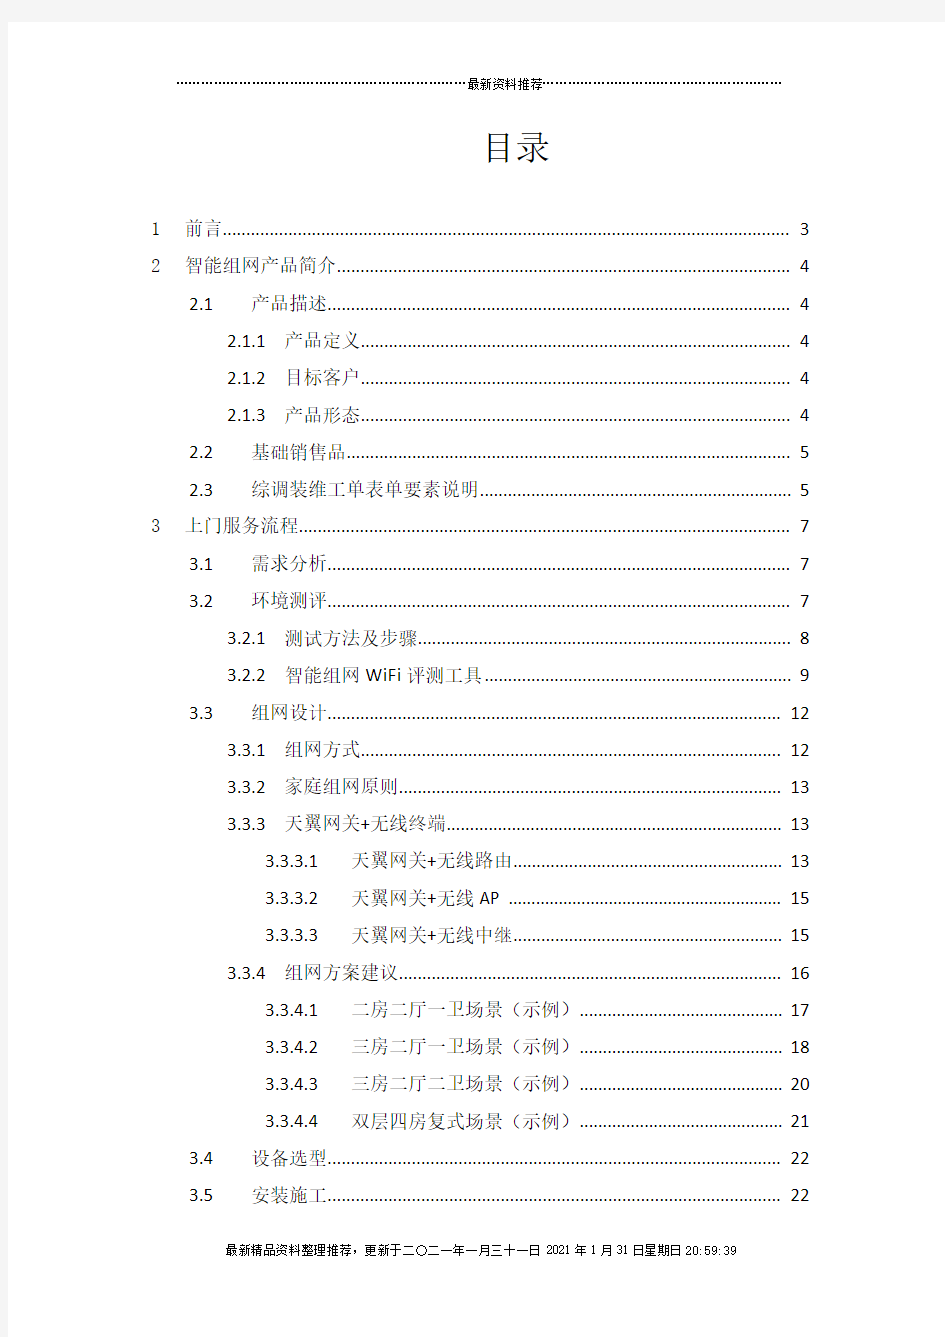 中国电信广东公司智能组网产品安装服务规范(V10)0